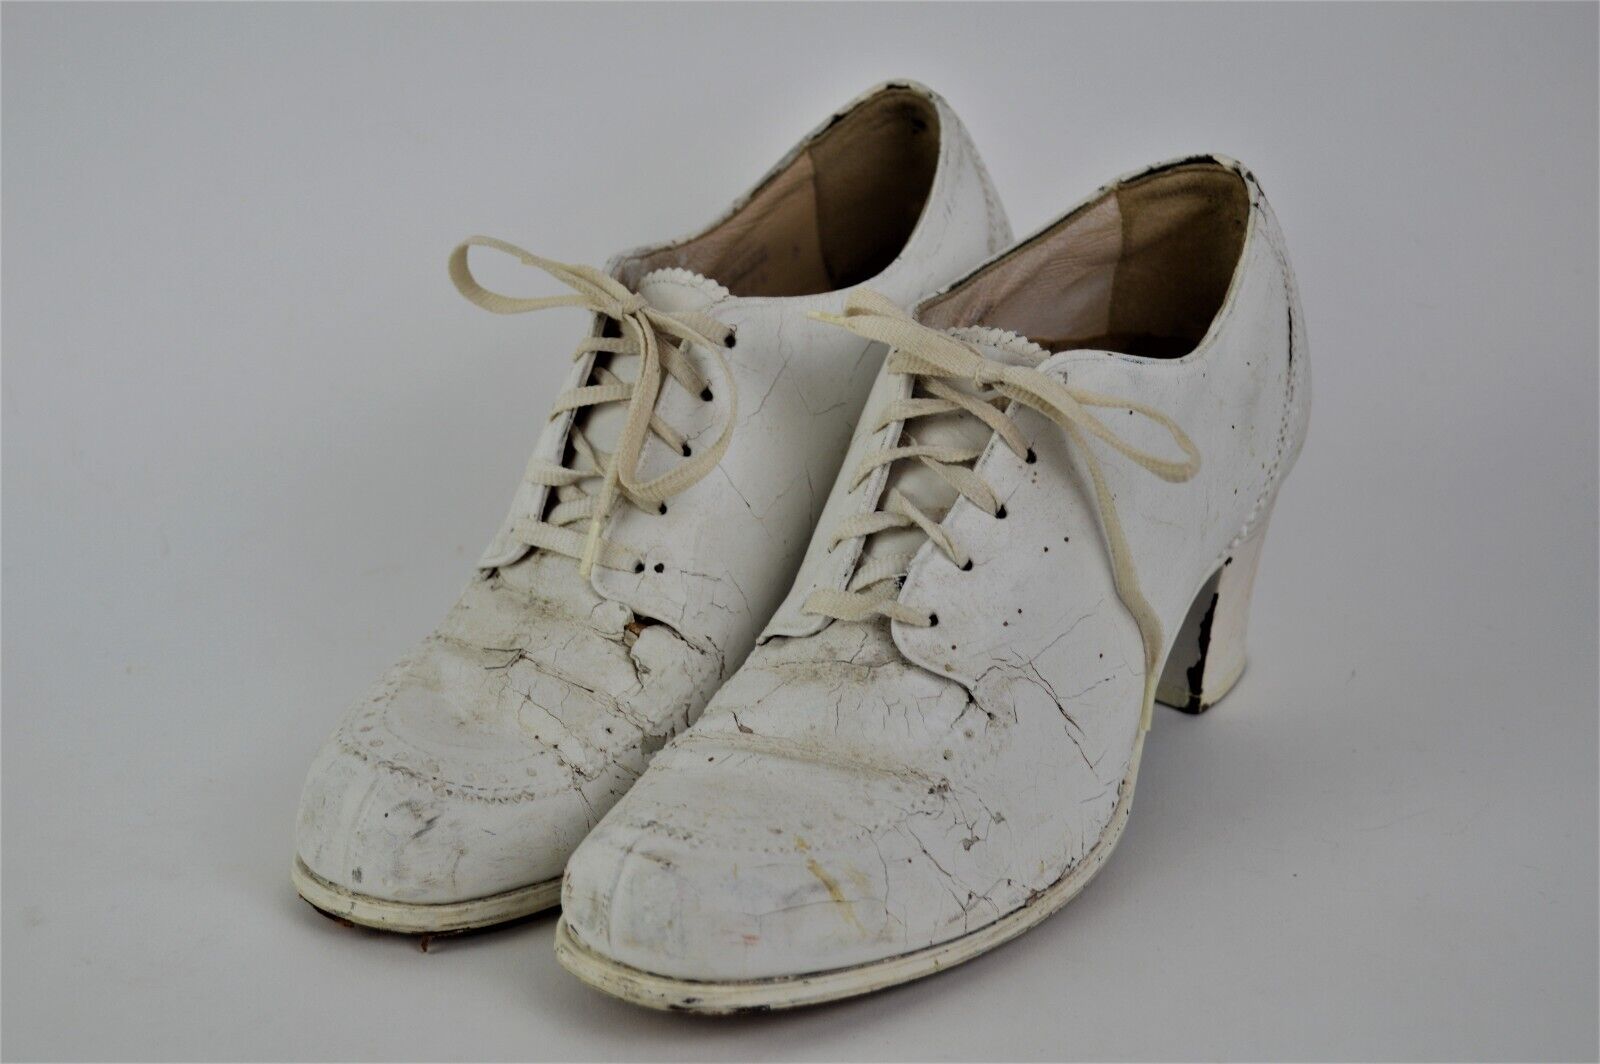 Vintage 1940s White Painted Nurses Shoes